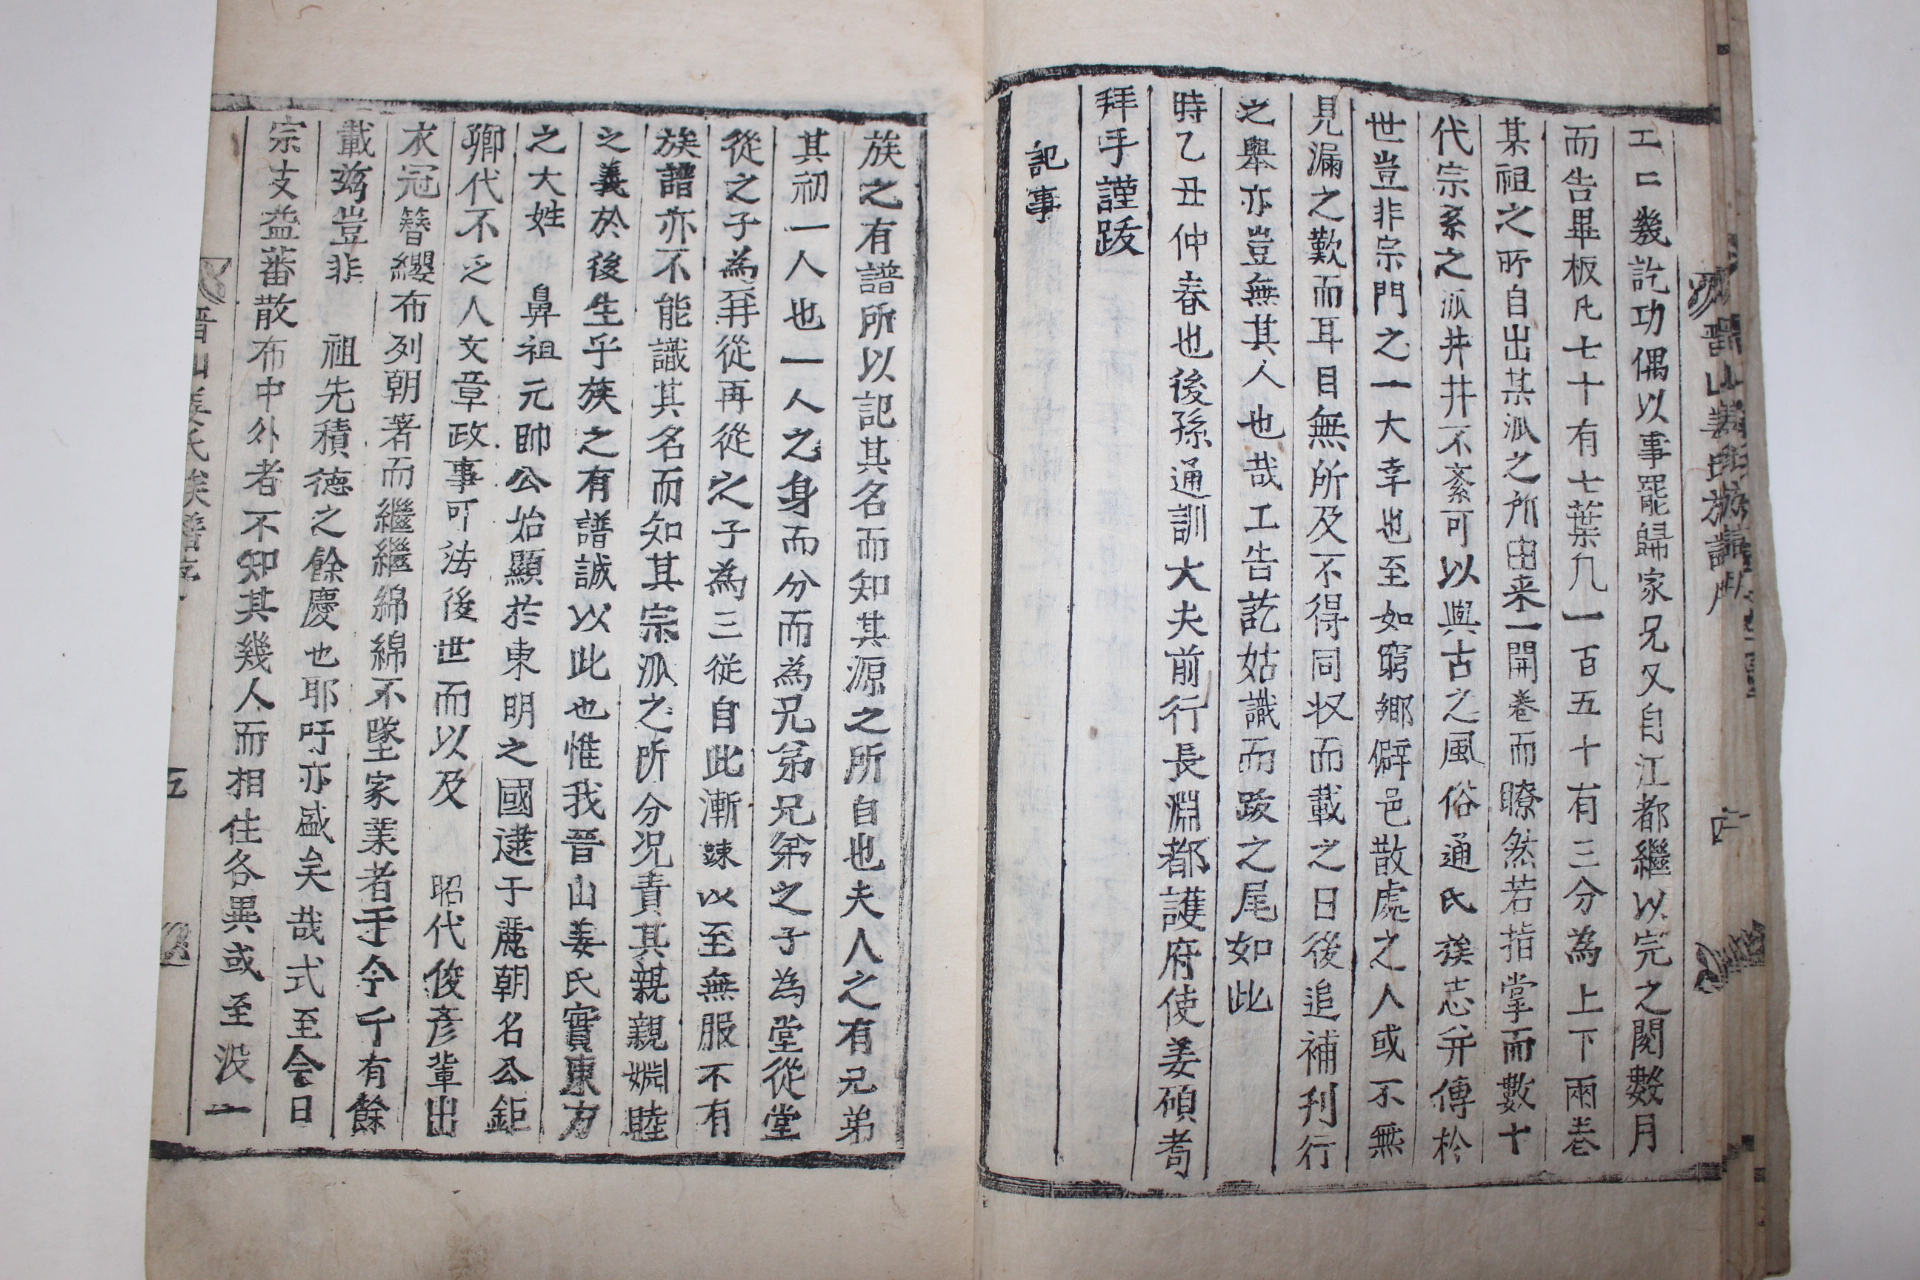 1845년 목활자본 진산강씨족보(晋山姜氏族譜) 권1,2  2책